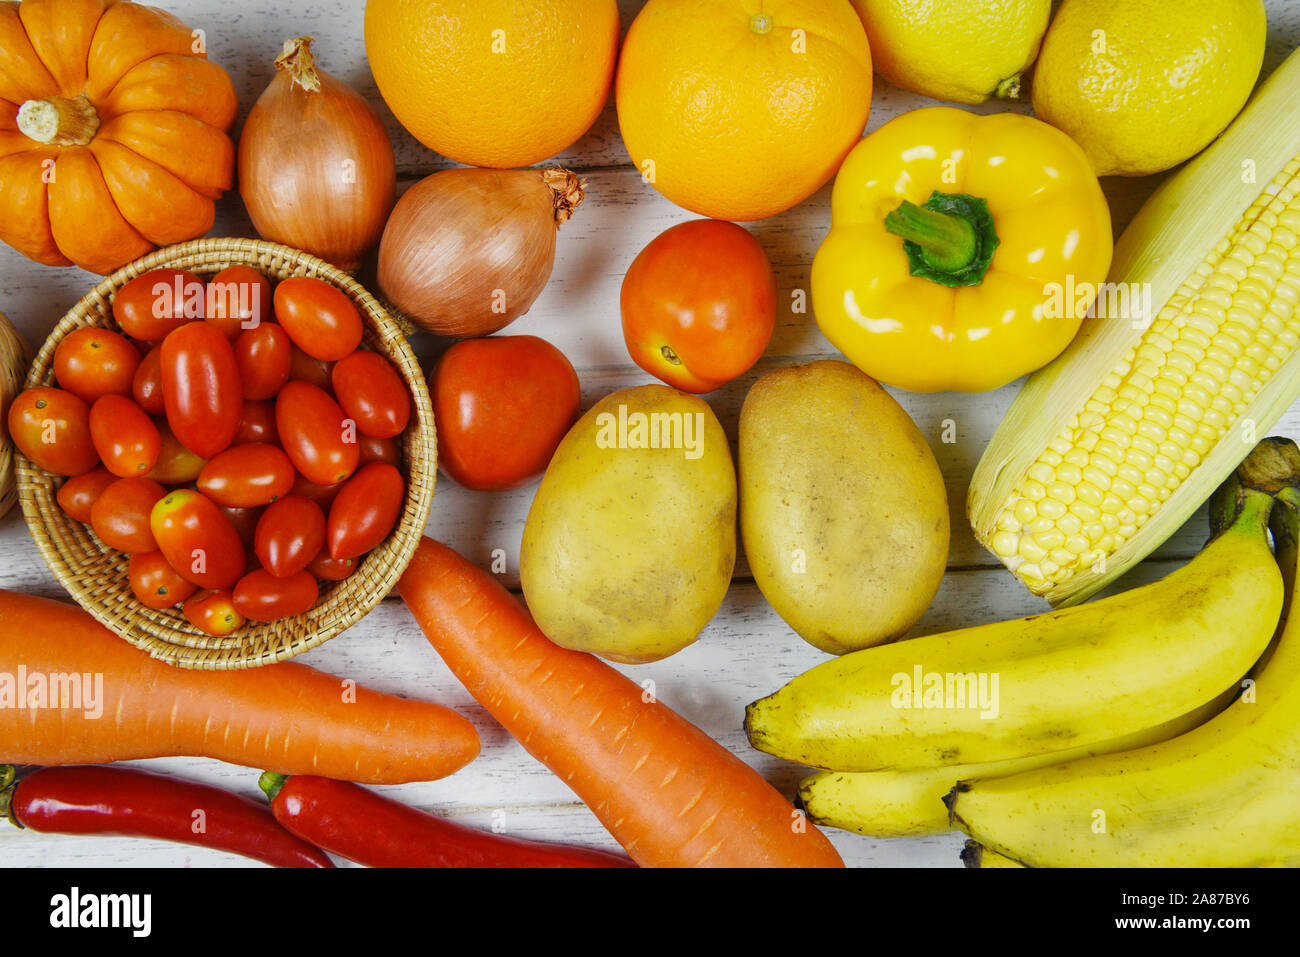 Un assortiment de fruits frais mûrs jaune violet rouge et rouge de sélection mixte légumes divers aliments ingrédients , vue de dessus / fruits et légumes contexte h Banque D'Images